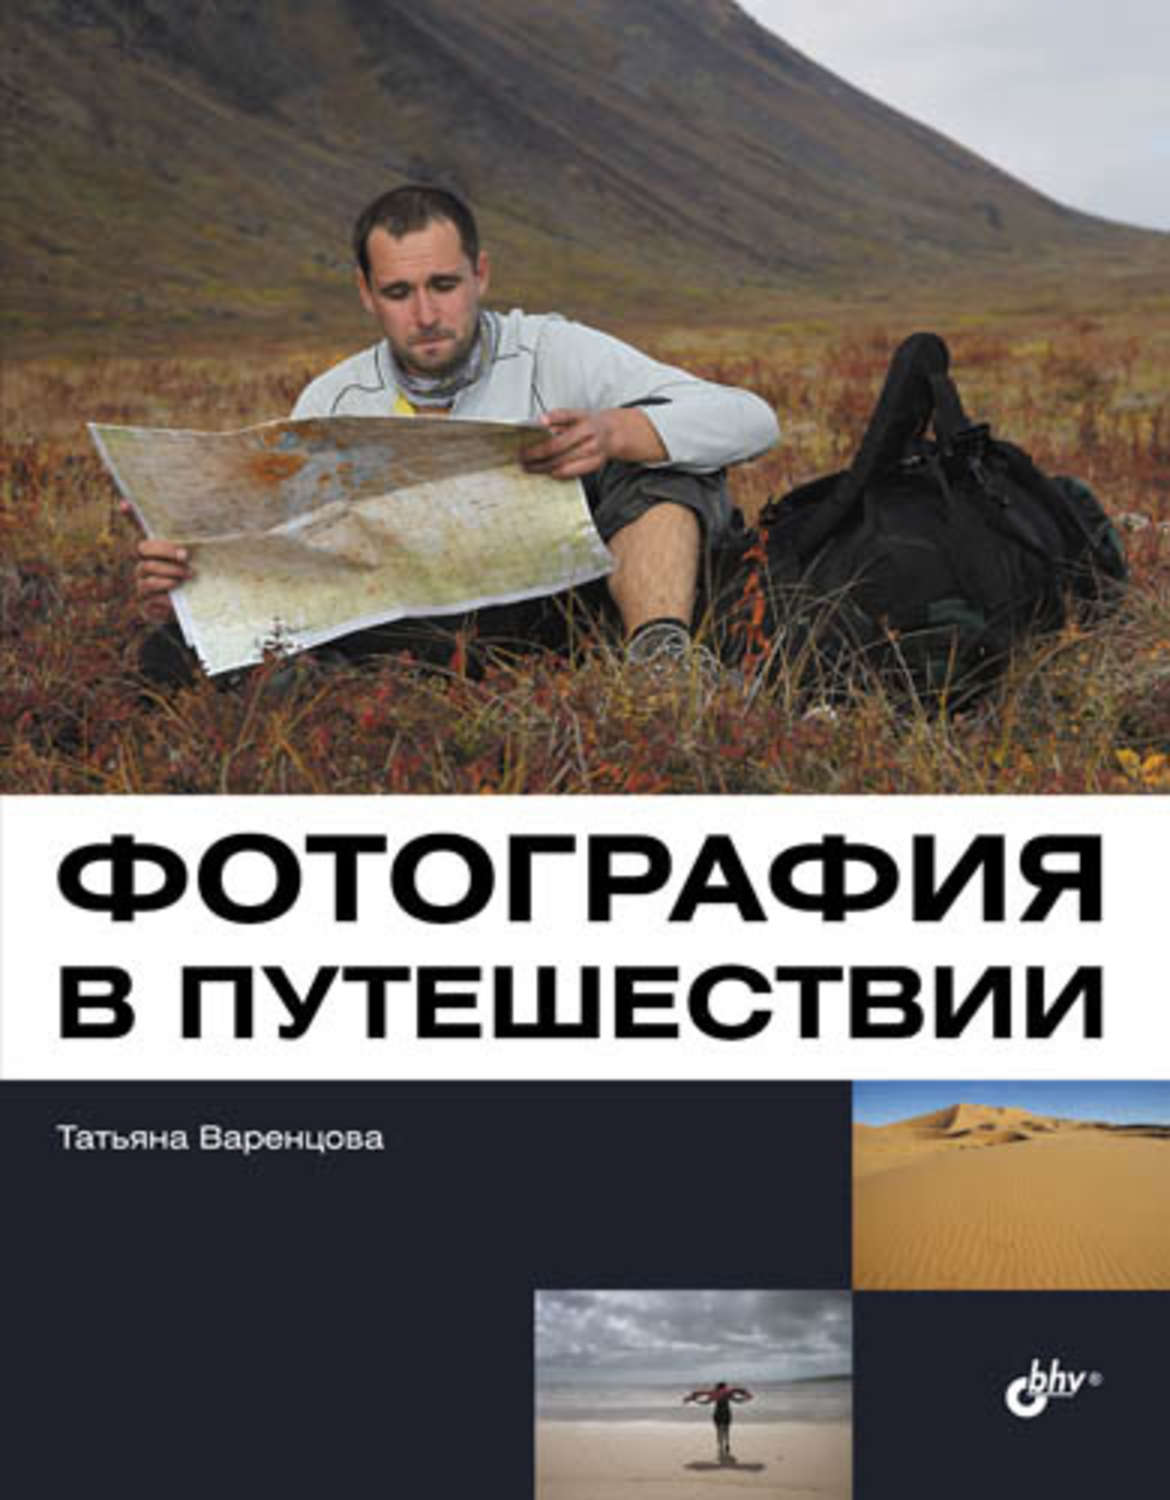 Книга о путешествиях с фотографиями